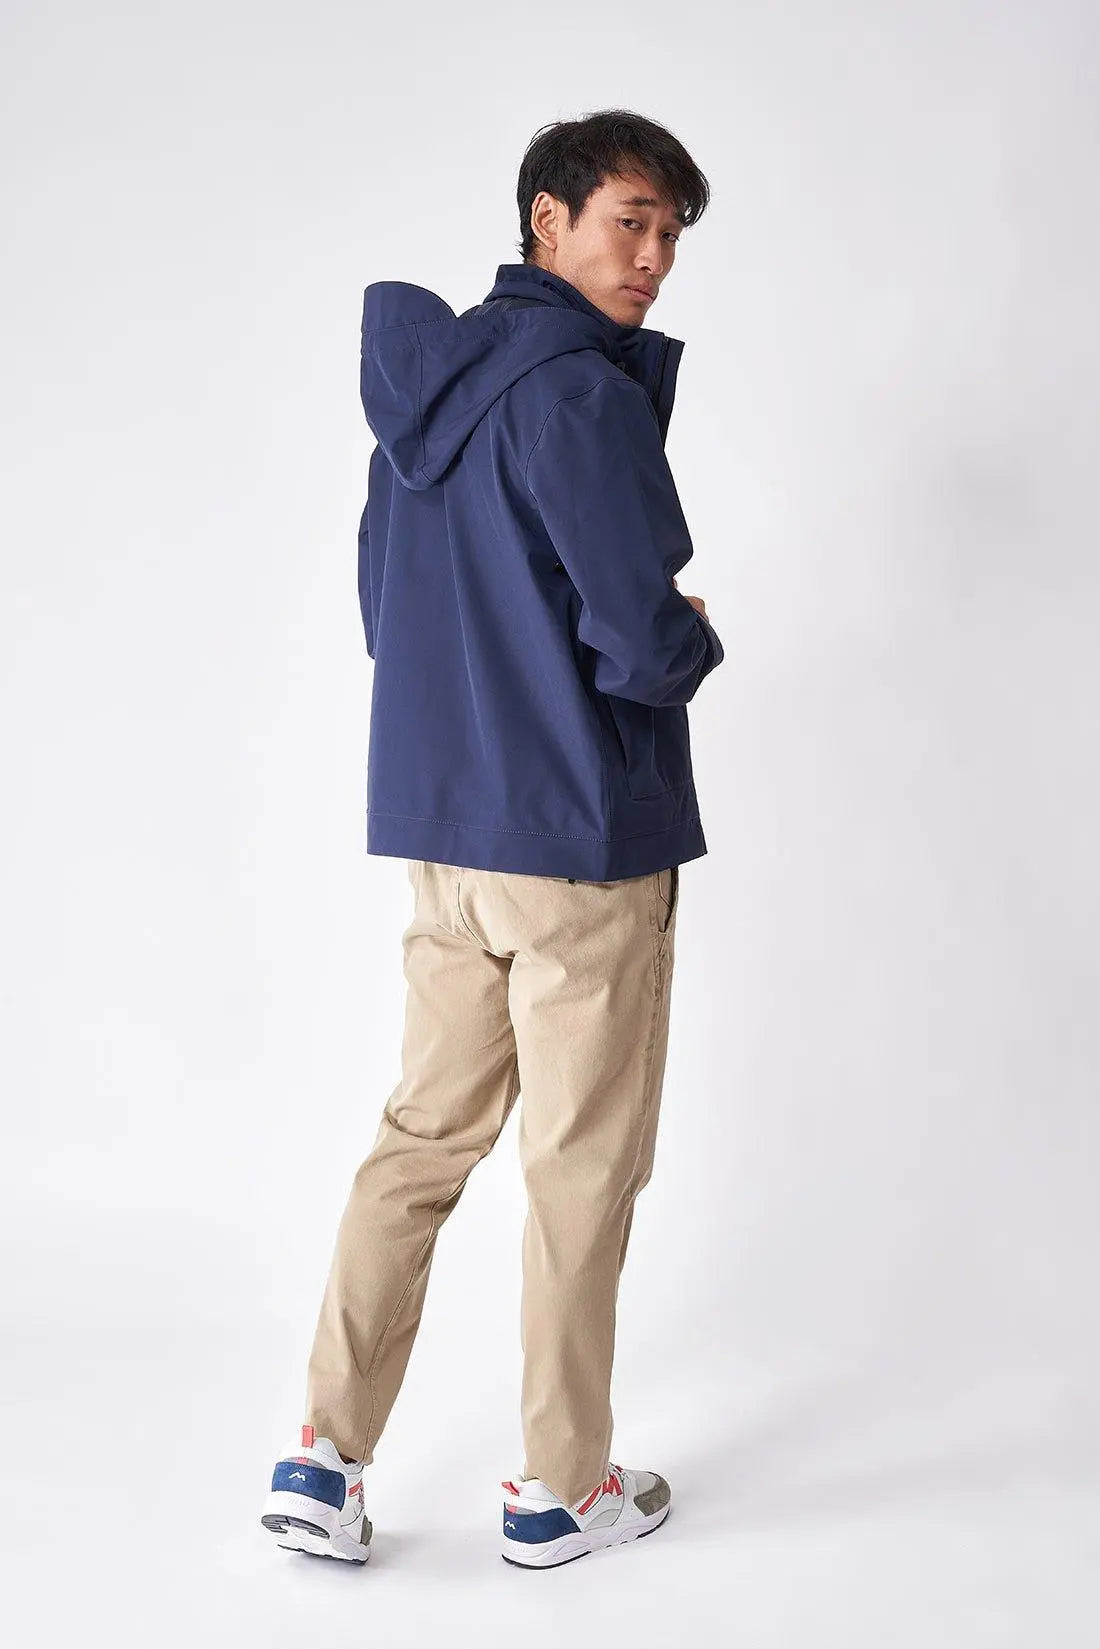 Chubasquero - Traje impermeable para hombre, chaqueta impermeable para  hombre, pantalones, traje inferior para trabajo, camping, pesca (color  azul